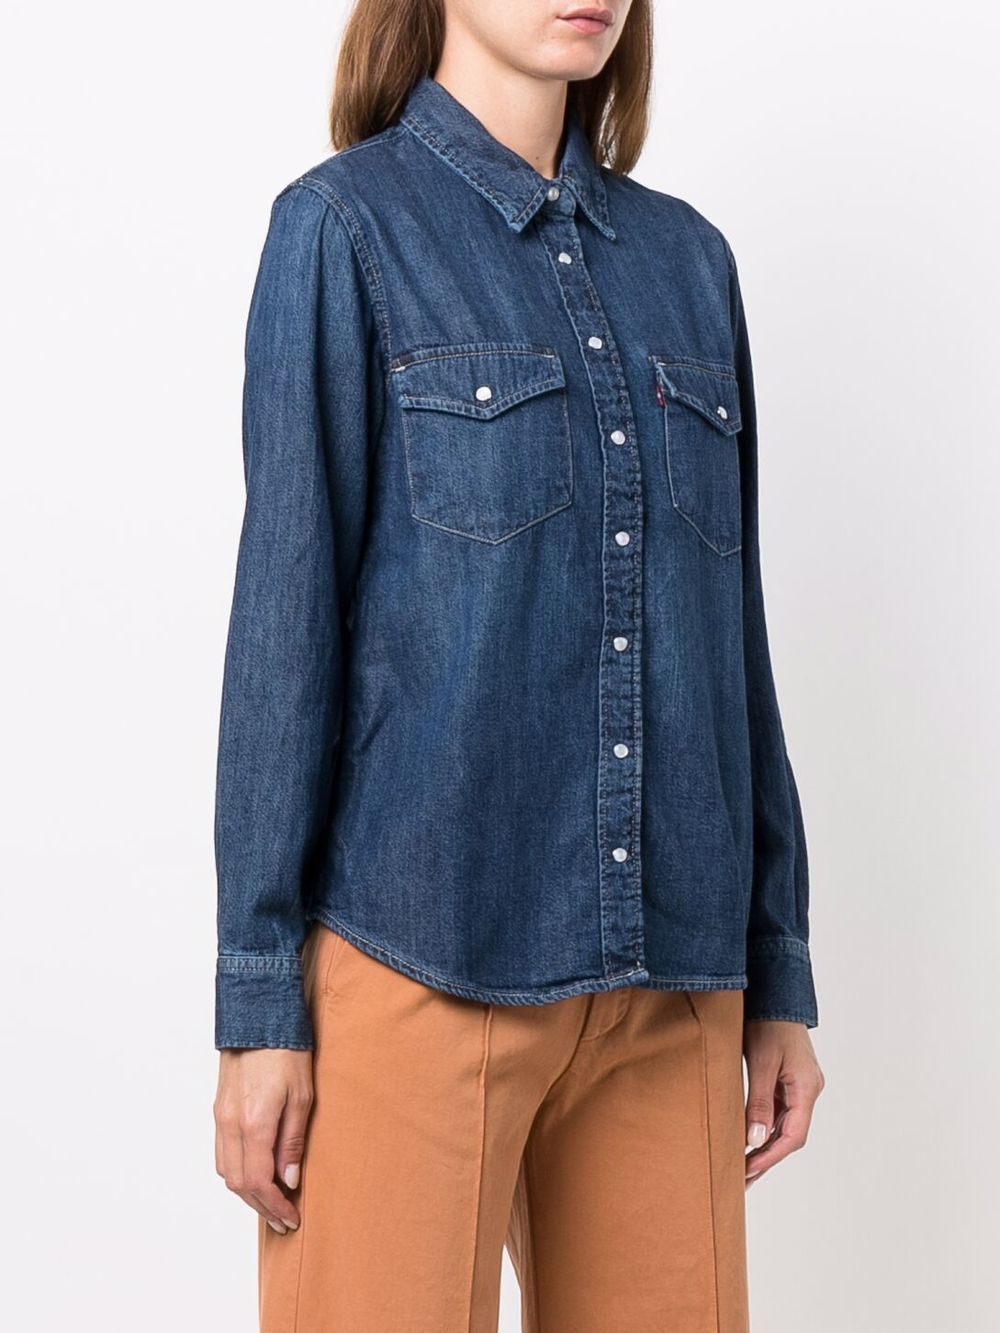 Indigo blue cotton button-down denim shirt